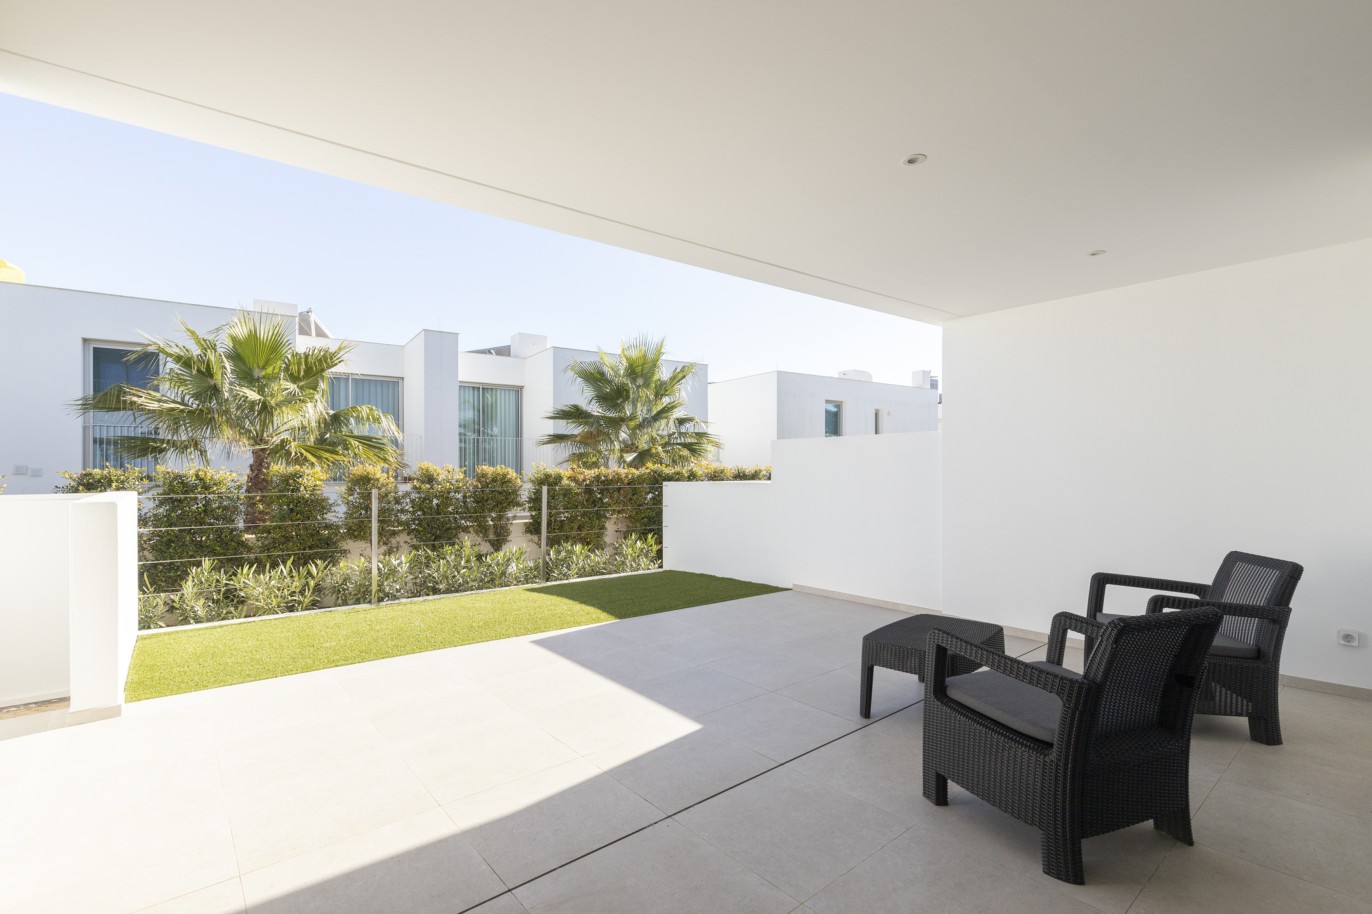 Villa de 3 chambres en copropriété privée, à vendre, à Lagos, Algarve_217638